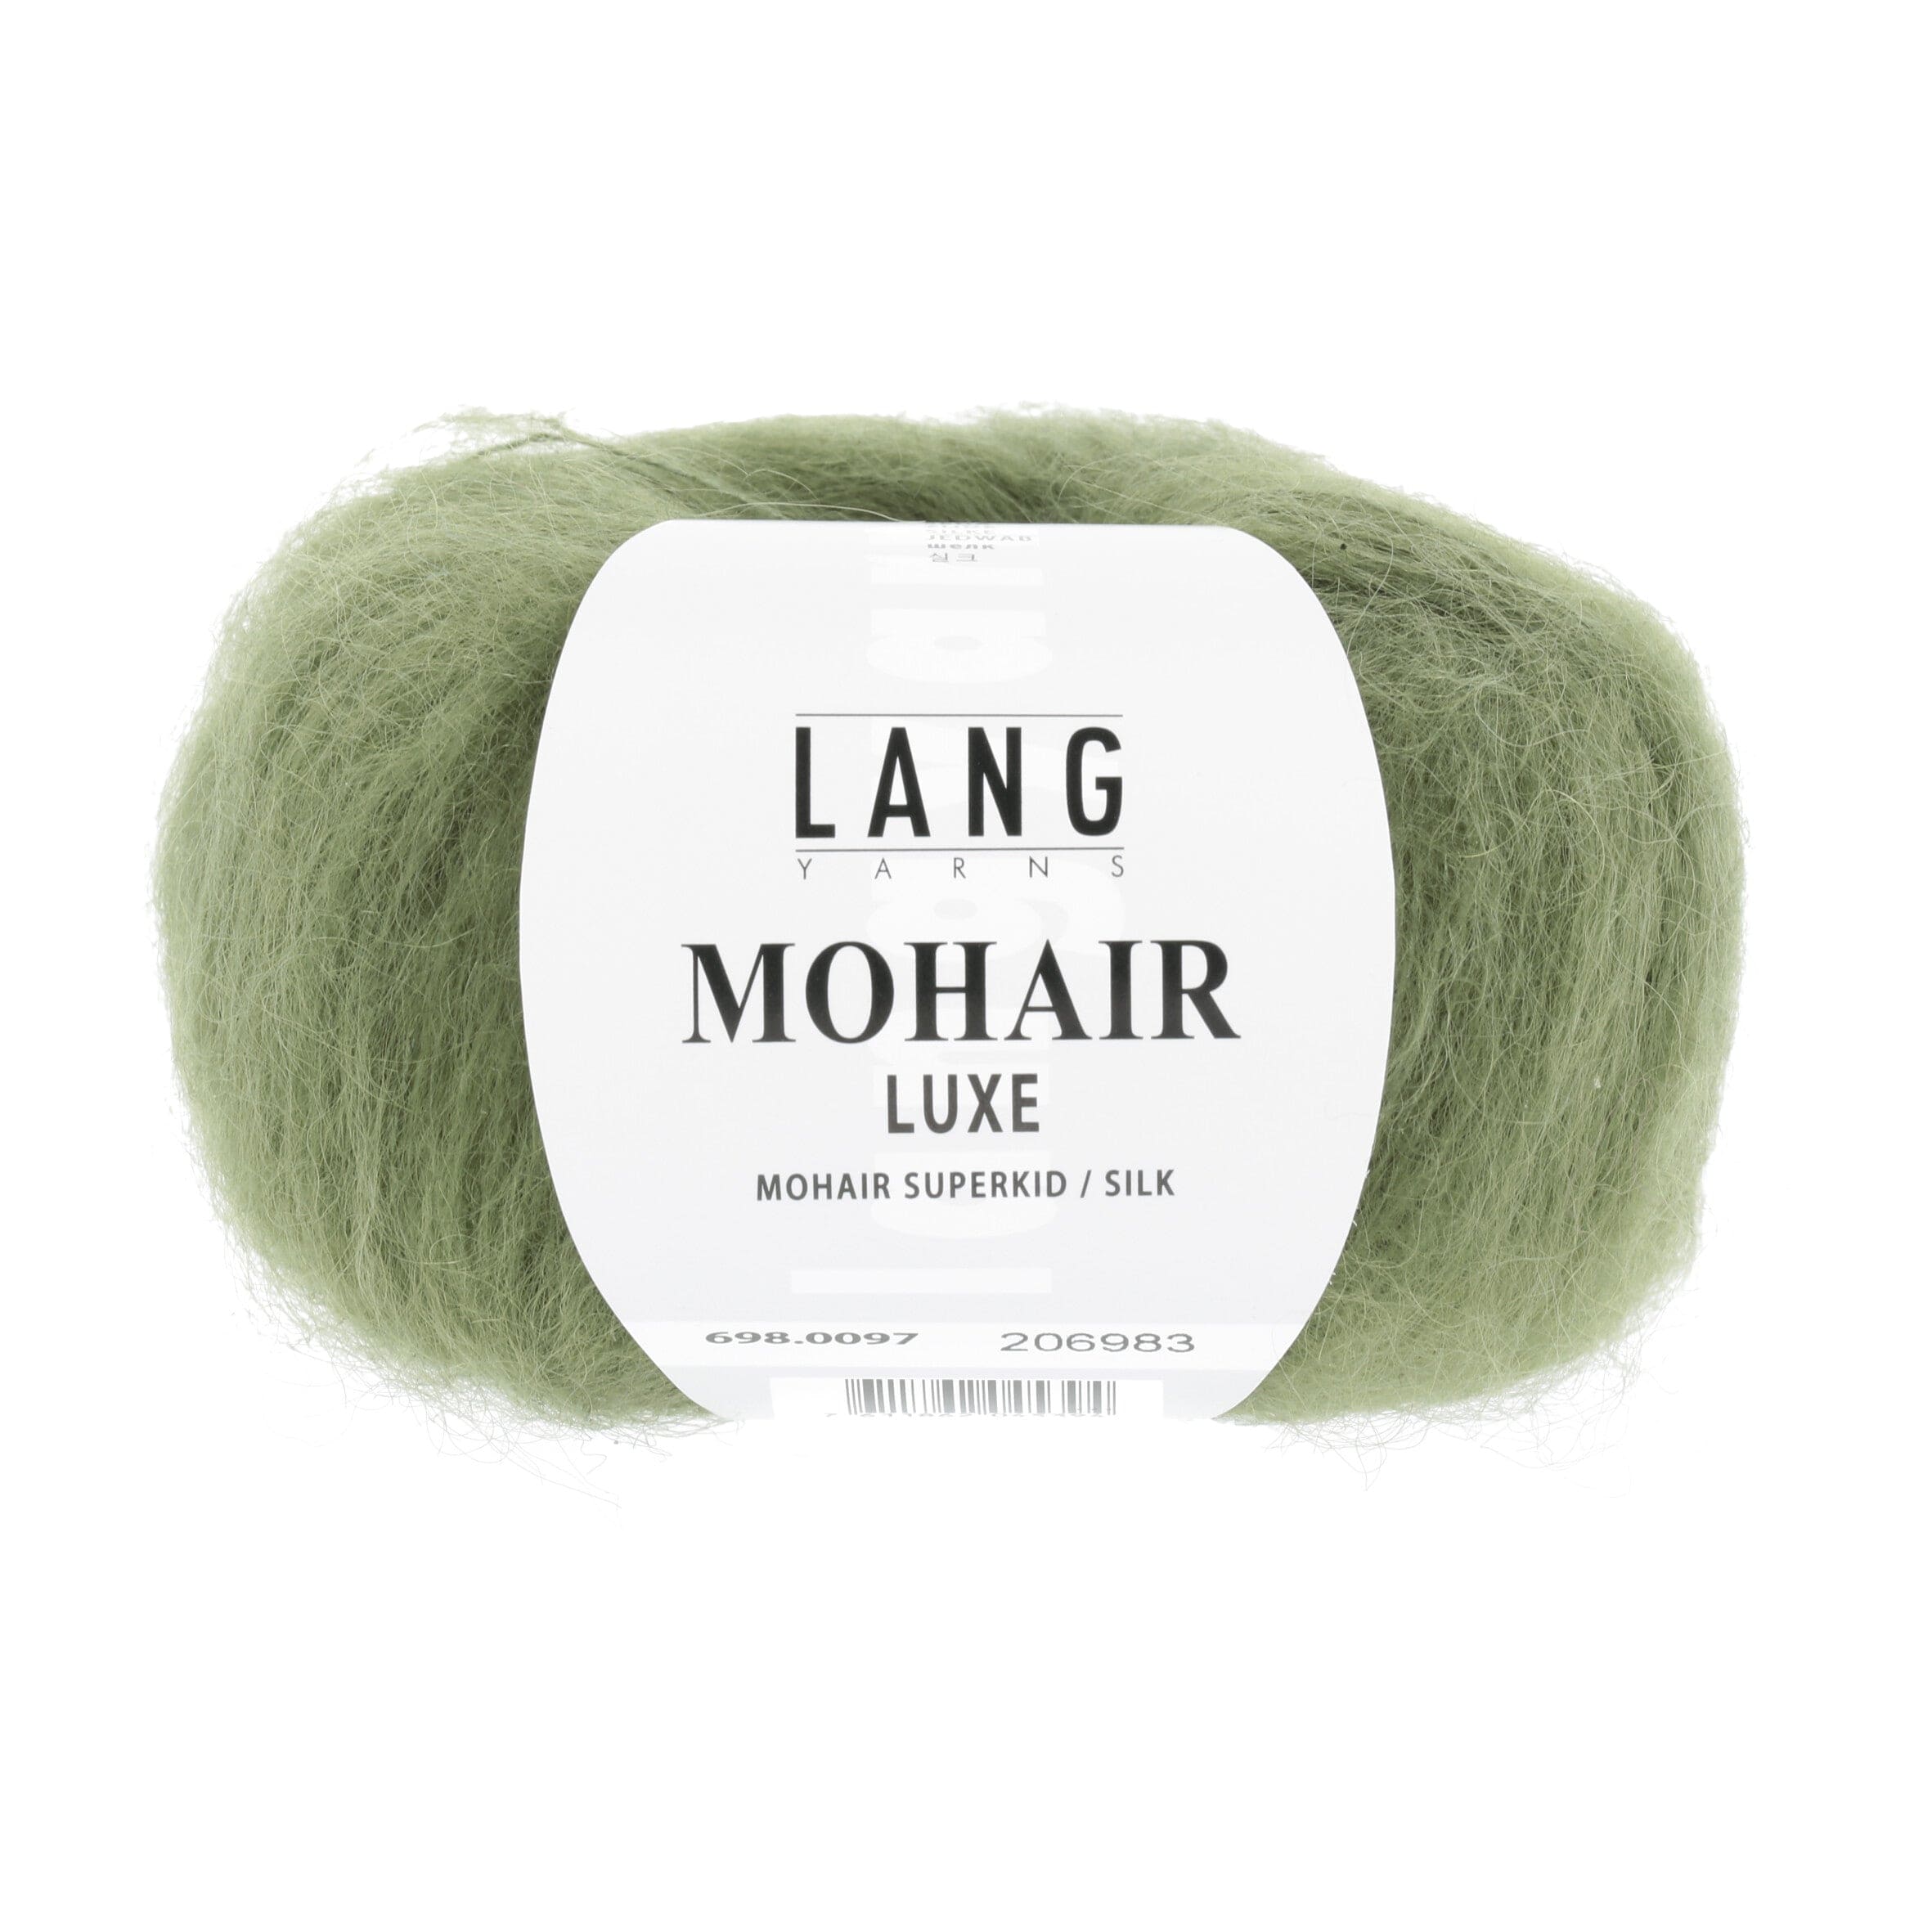 MOHAIR LUXE von LANG YARNS jetzt online kaufen bei OONIQUE